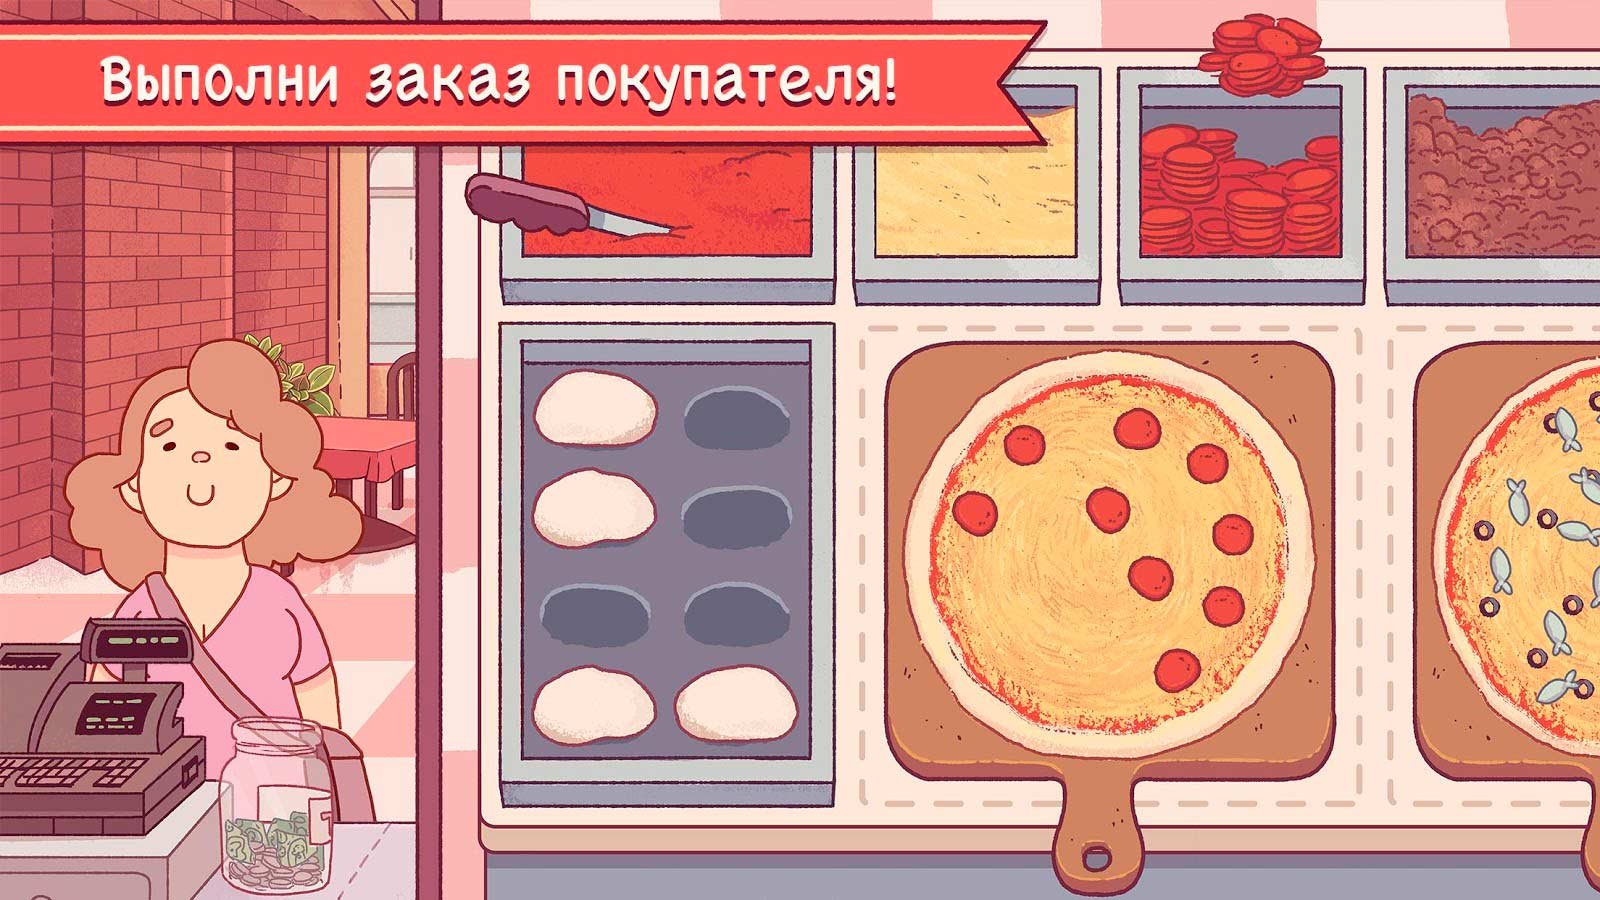 пицца игра скачать бесплатно андроид на русском фото 8